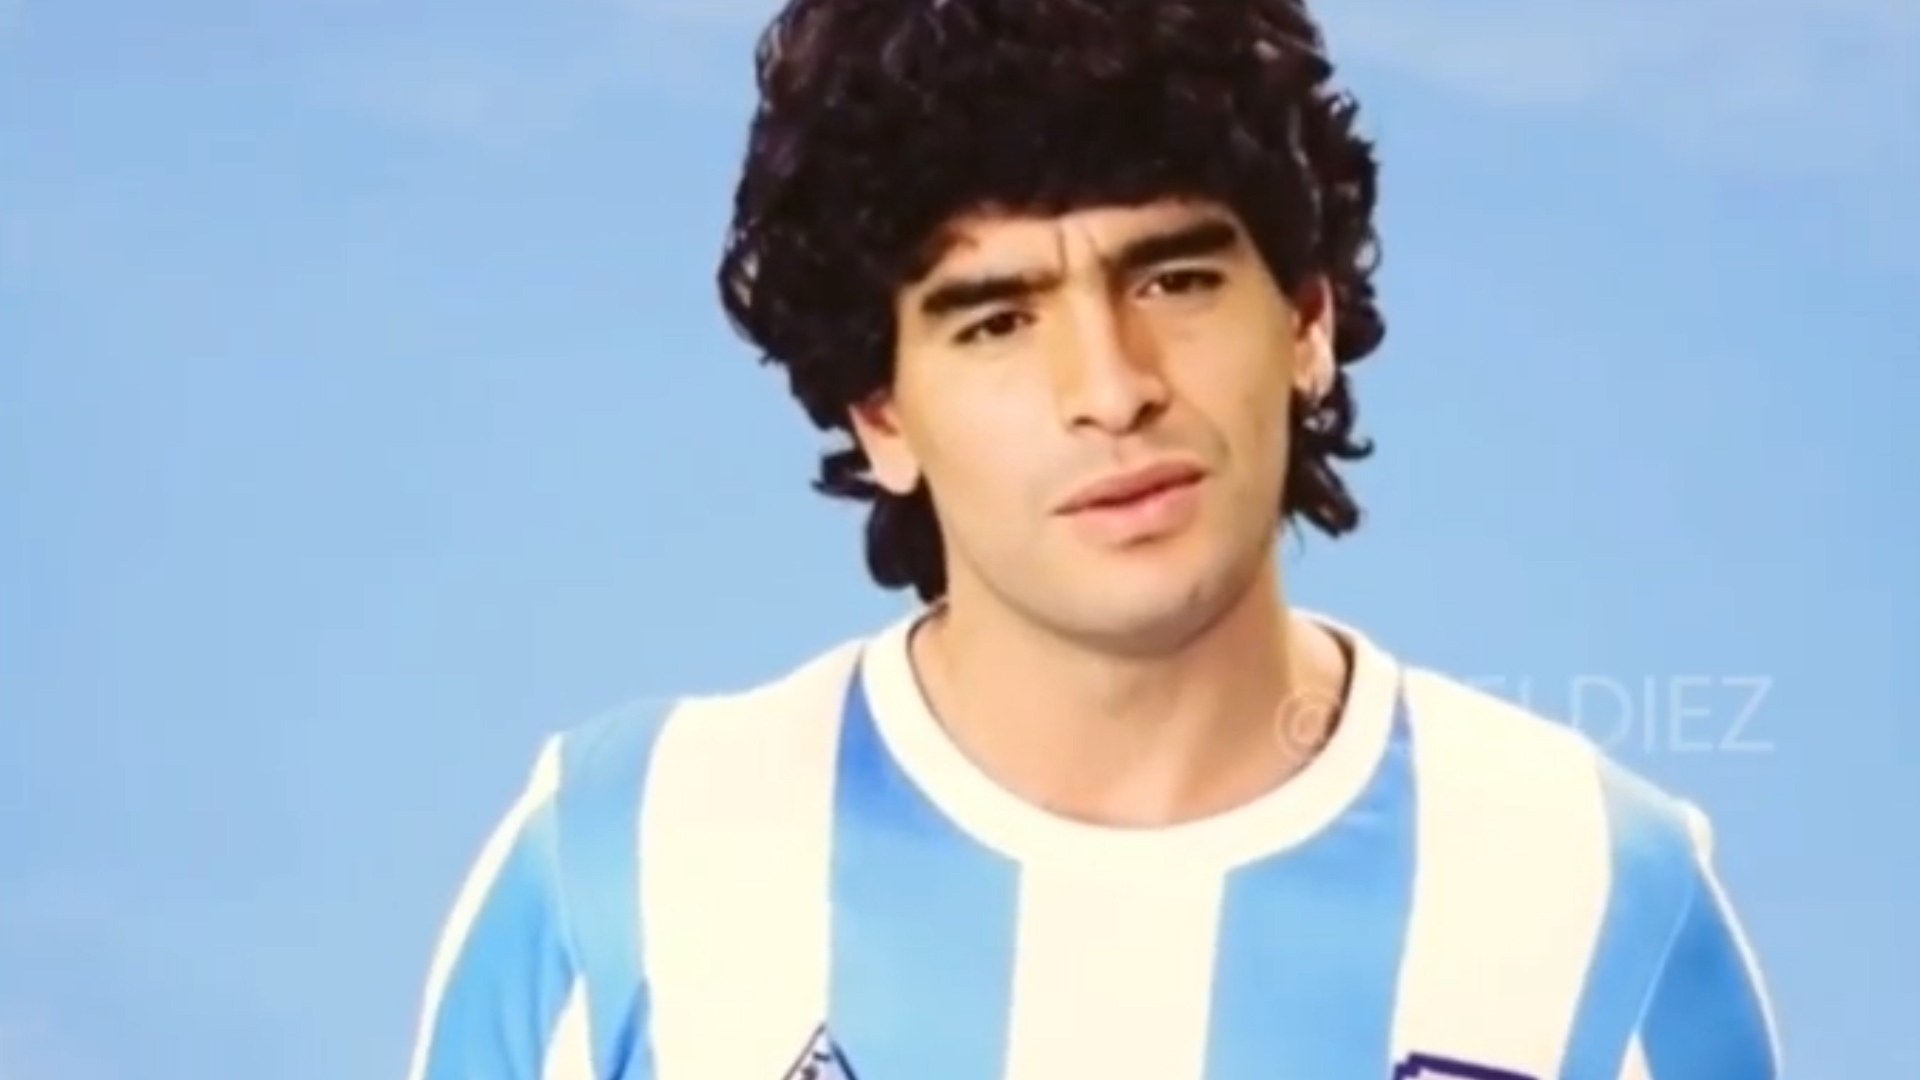 El estremecedor mensaje de Diego Maradona recreado con inteligencia artificial: “No me olviden porque yo a ustedes los llevo en el corazón”